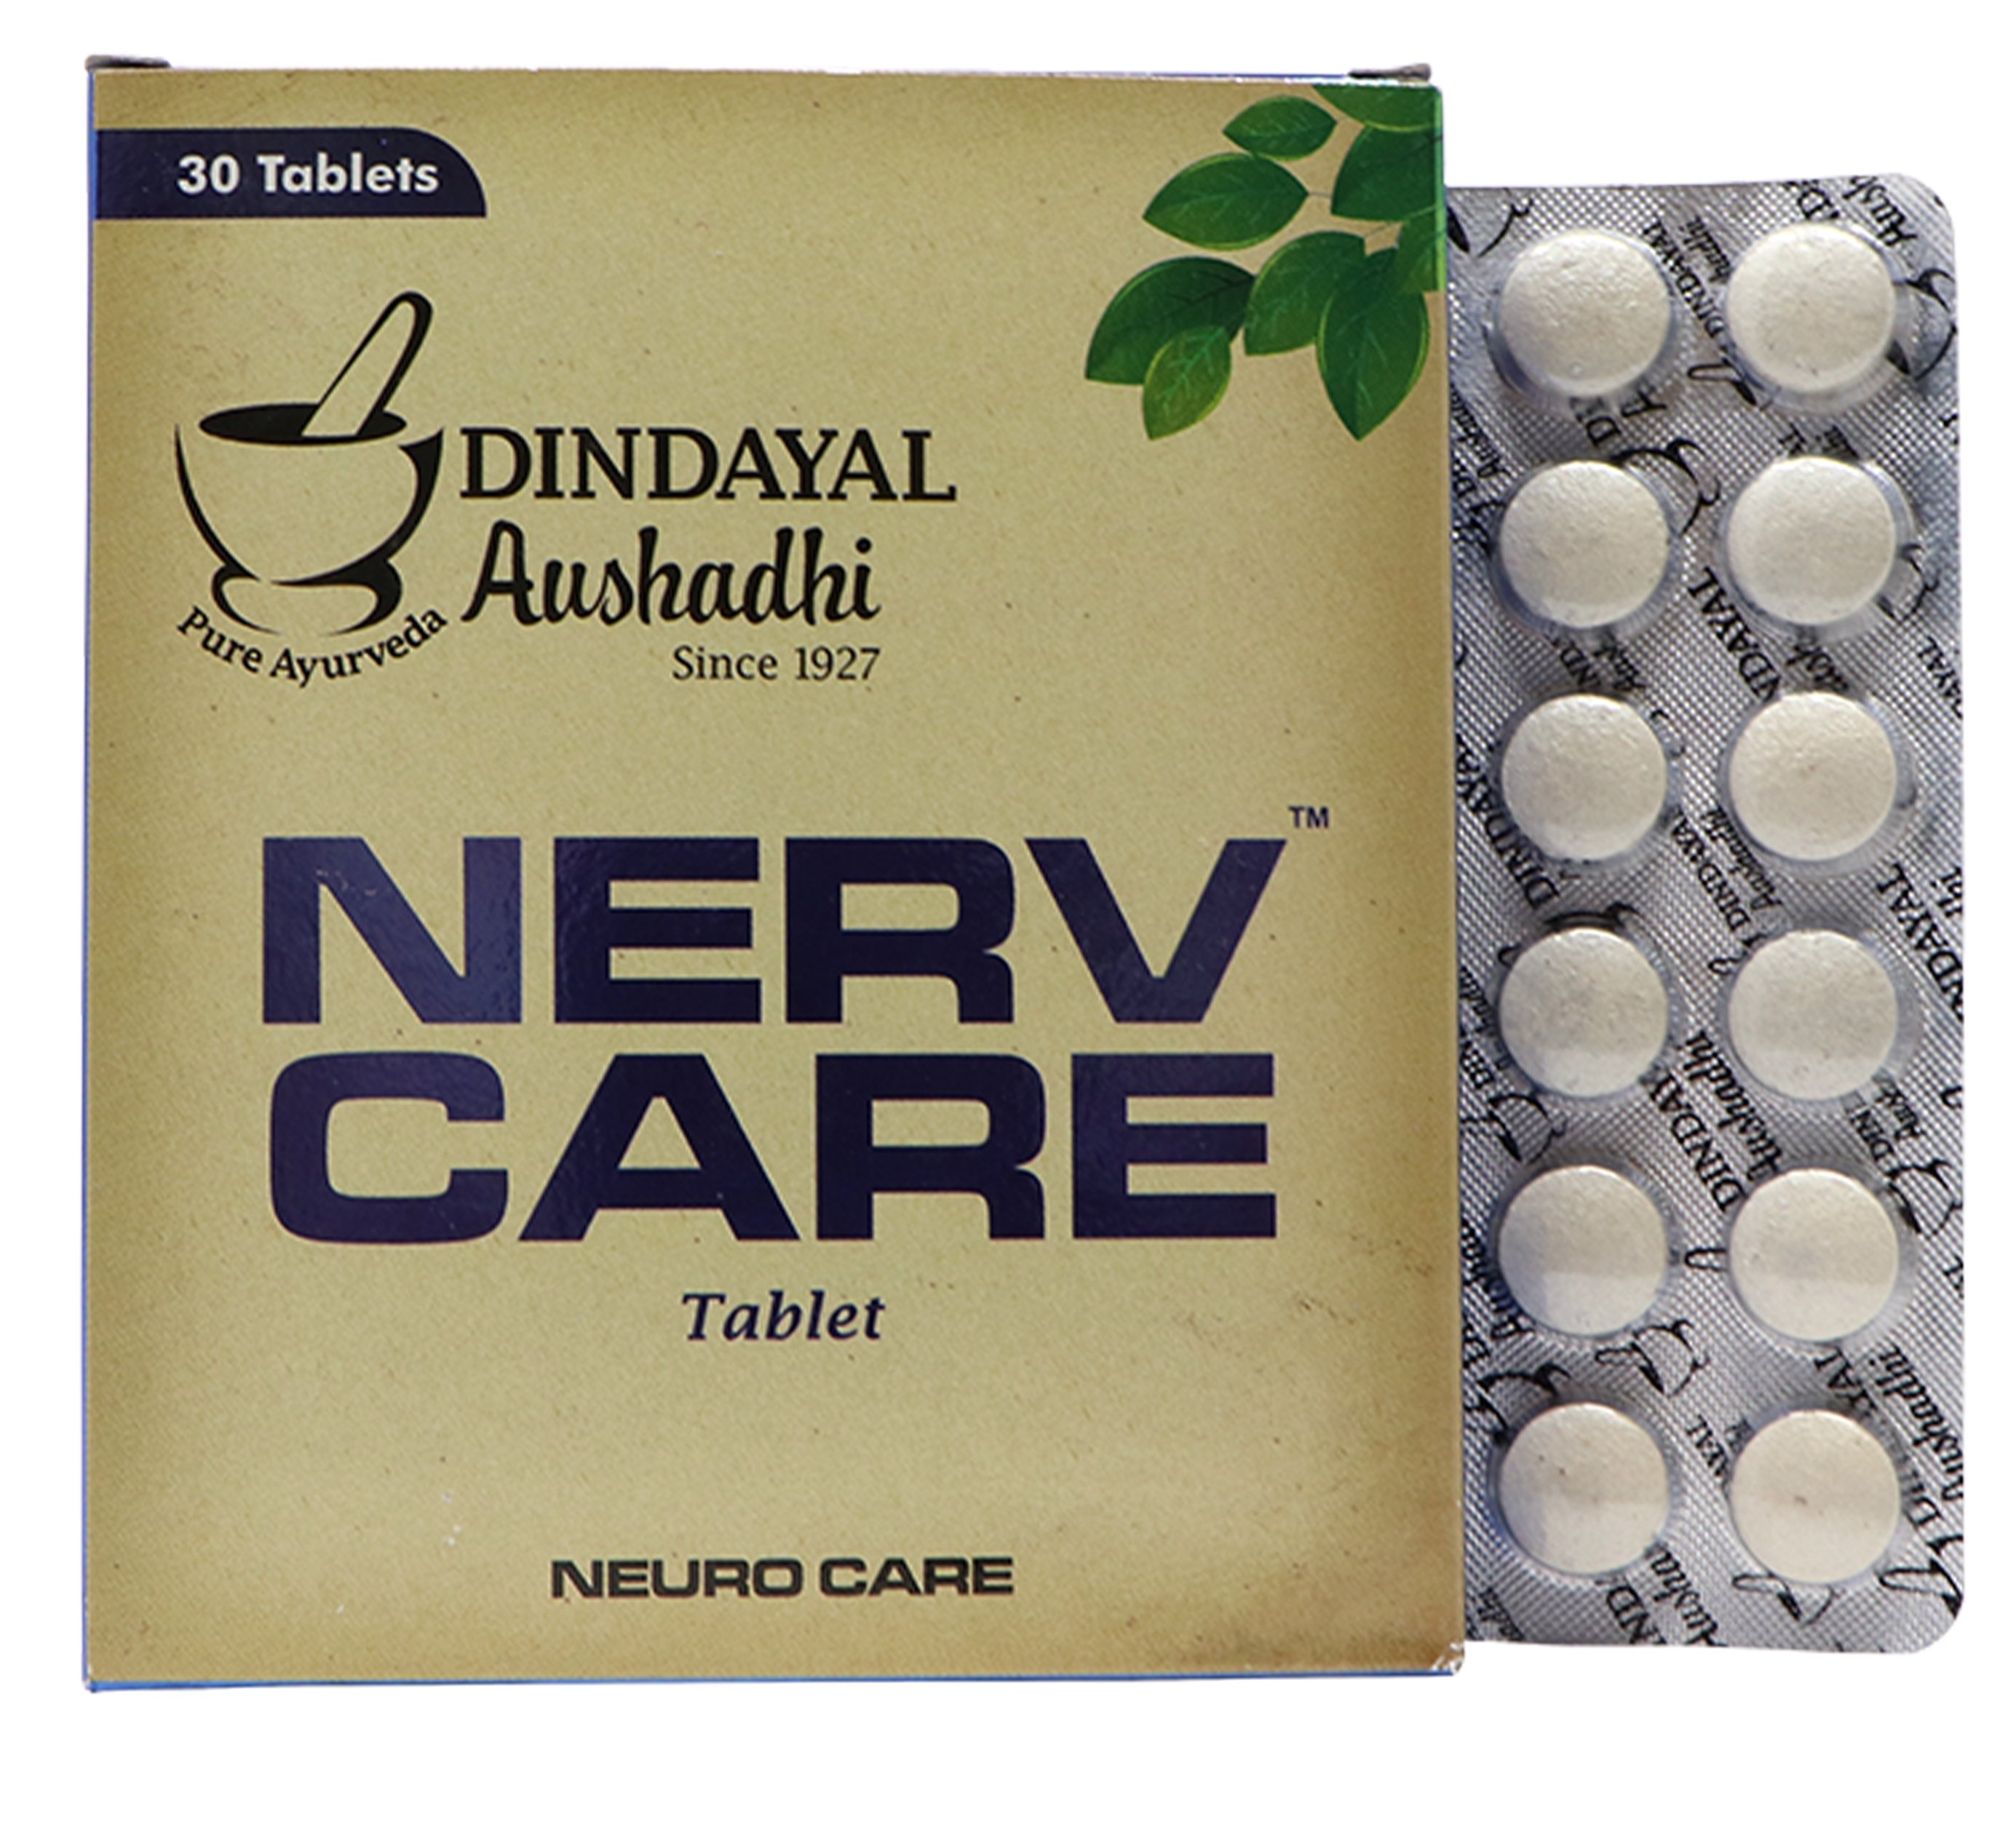  Dindayal Aushadhi Nerv Care Tablet